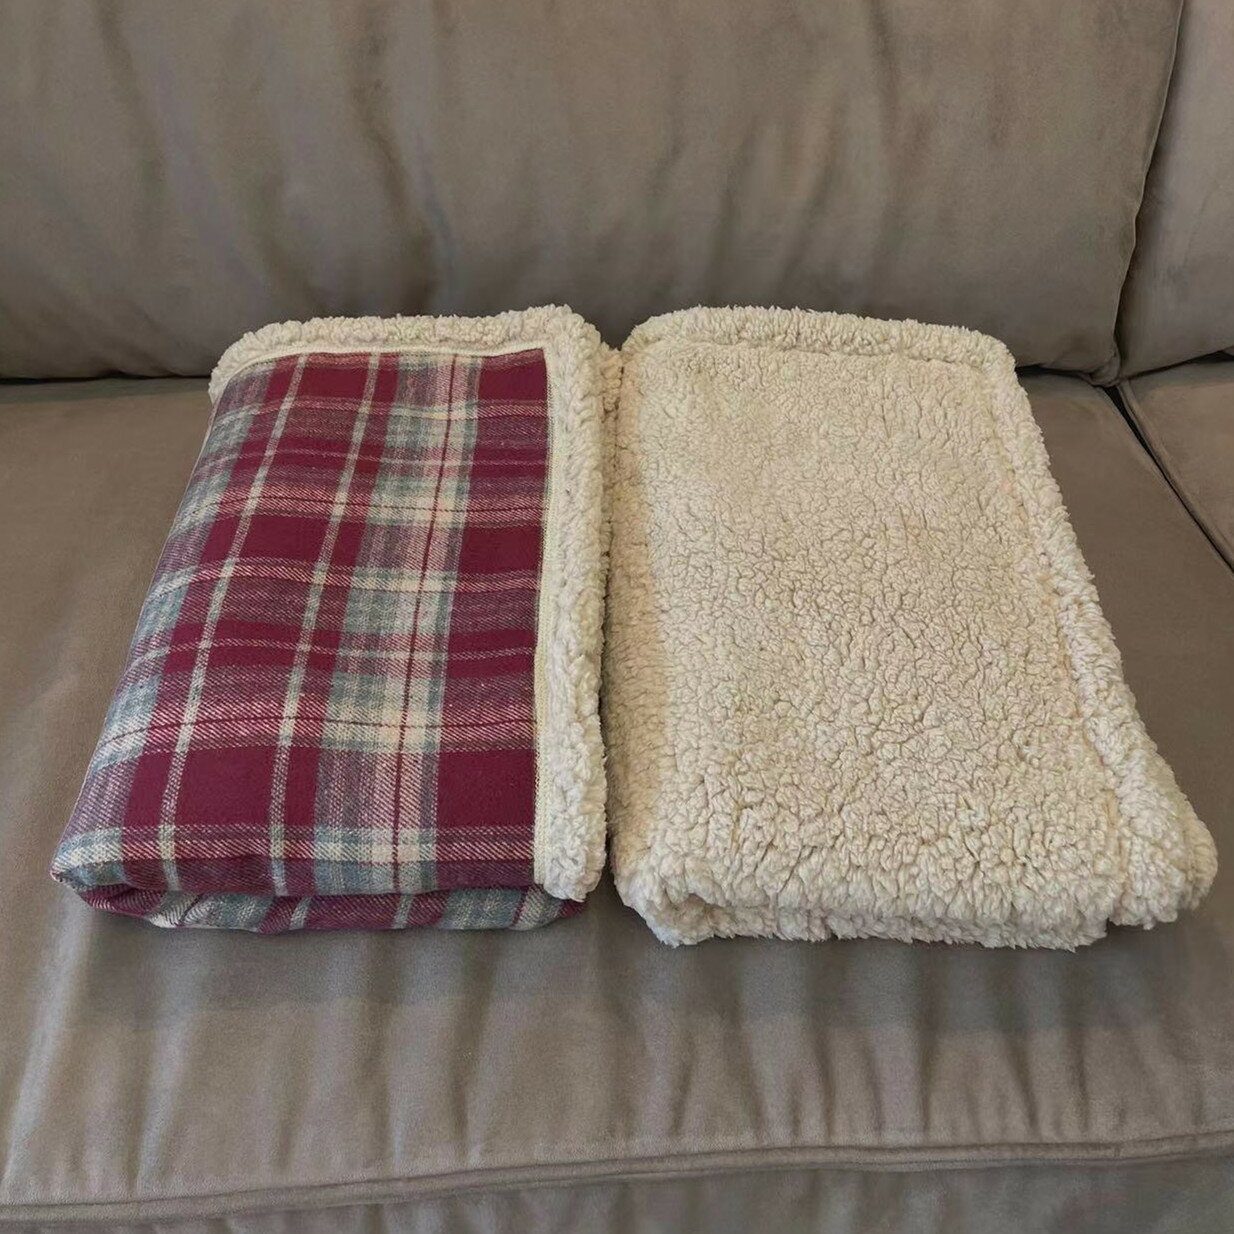 貓咪蓋毯 寵物被子 寵物狗狗貓咪加厚毛毯被子秋冬保暖羊羔毛格紋墊子深度睡眠蓋毯【KL9320】